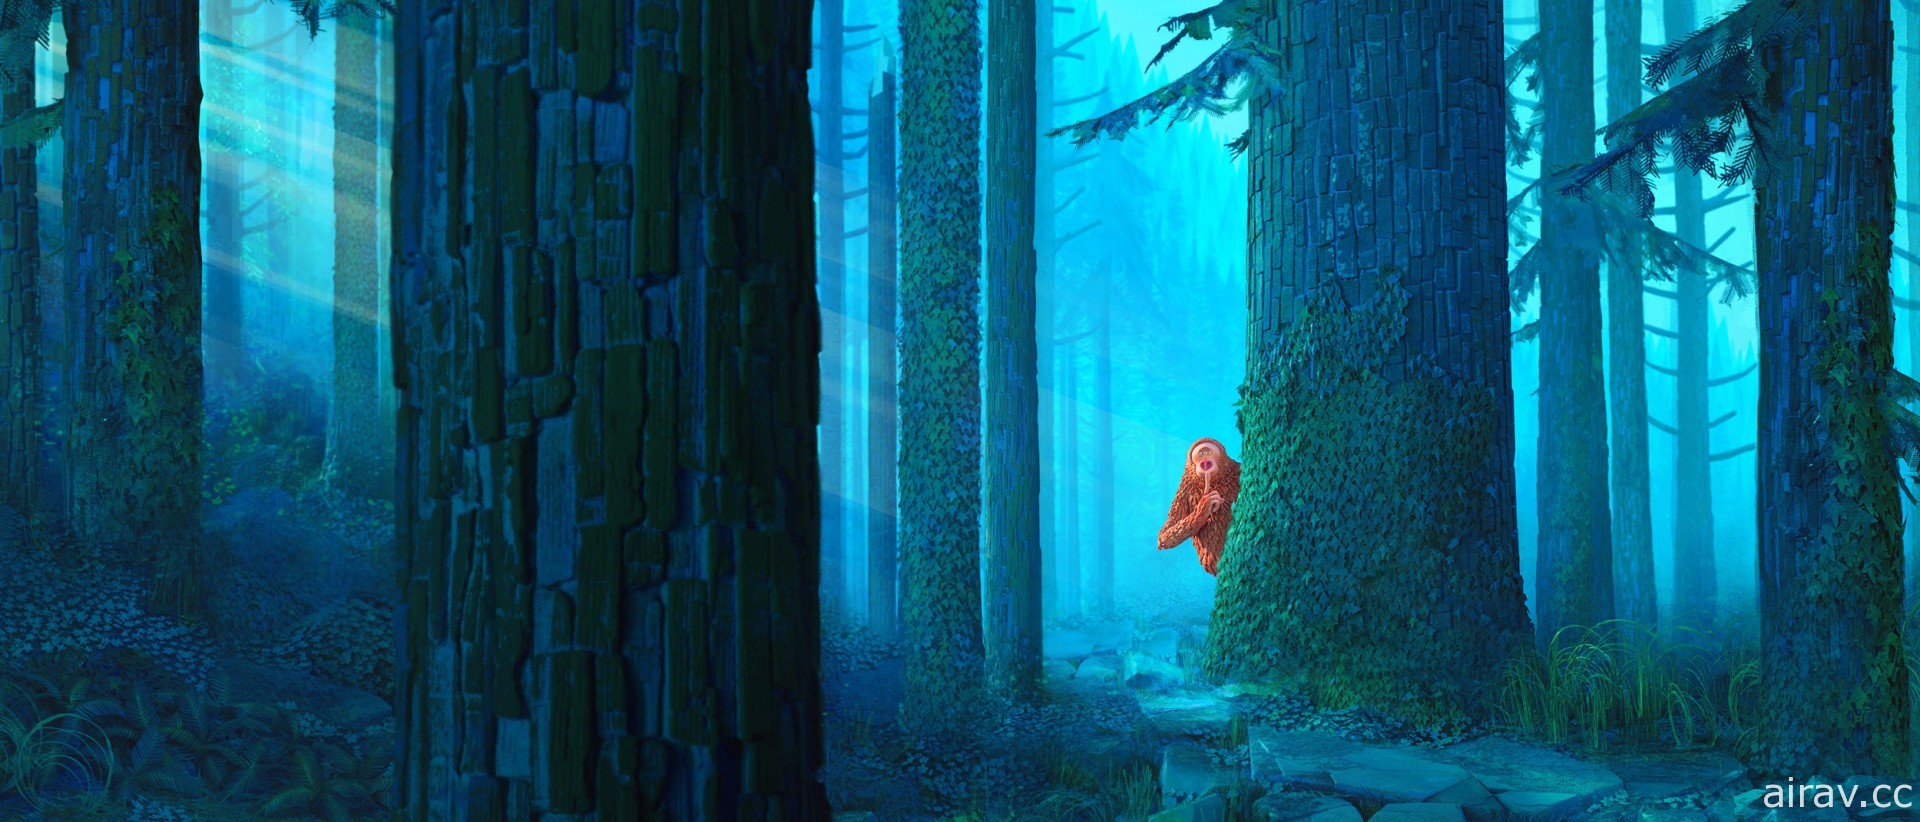 萊卡動畫工作室曝光第五部逐格動畫《怪物谷》故事細節和劇照 明年春季北美上映